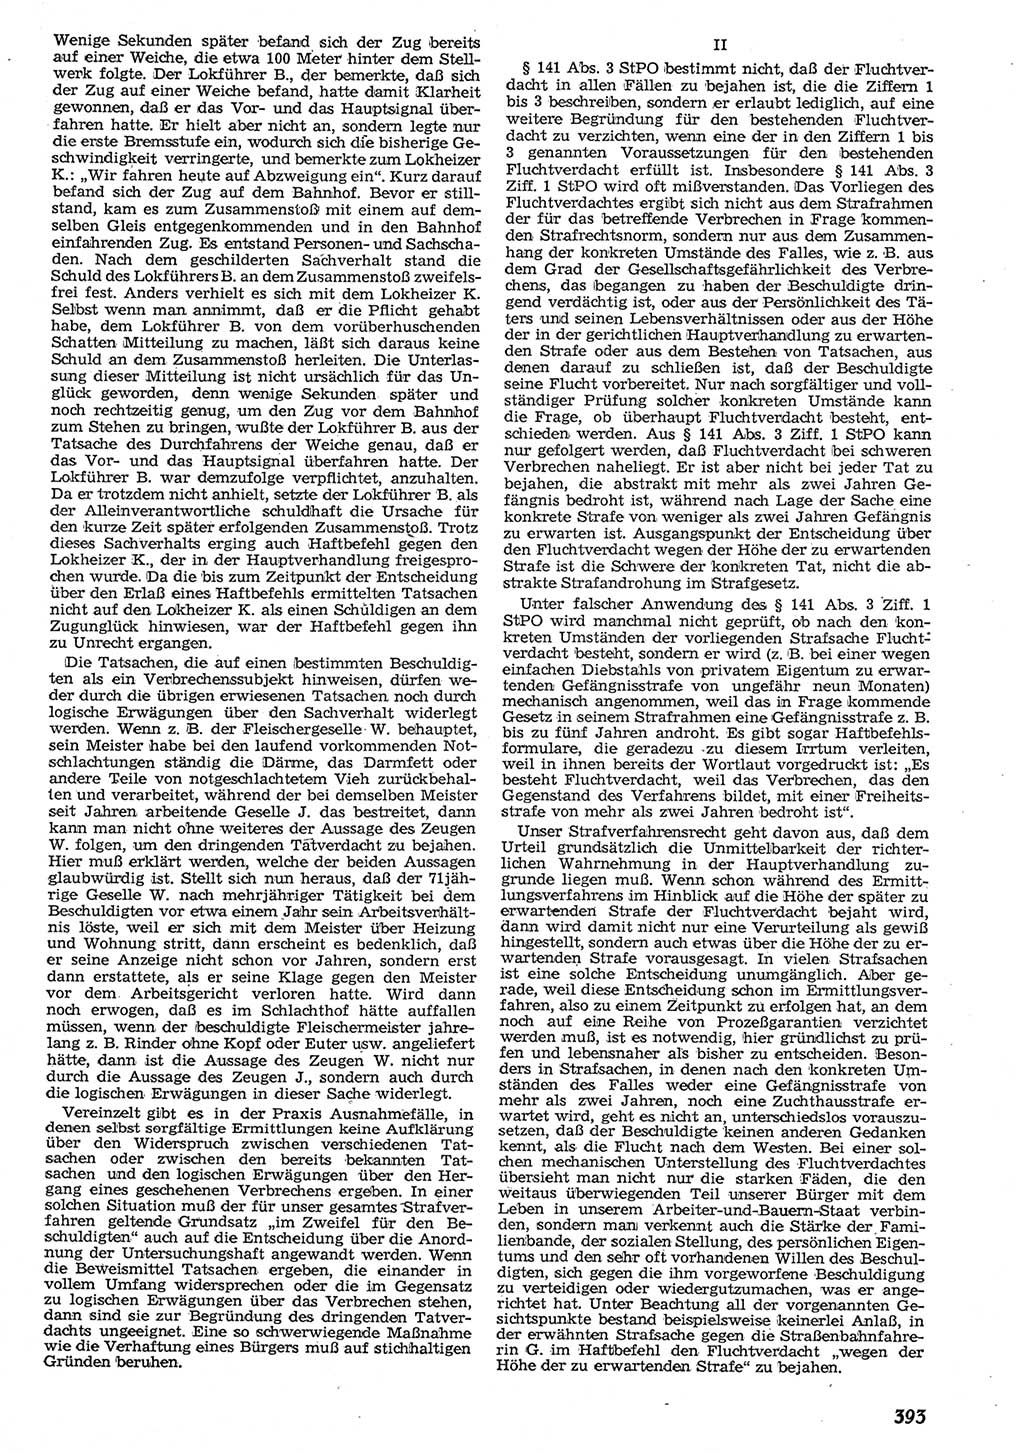 Neue Justiz (NJ), Zeitschrift für Recht und Rechtswissenschaft [Deutsche Demokratische Republik (DDR)], 10. Jahrgang 1956, Seite 393 (NJ DDR 1956, S. 393)